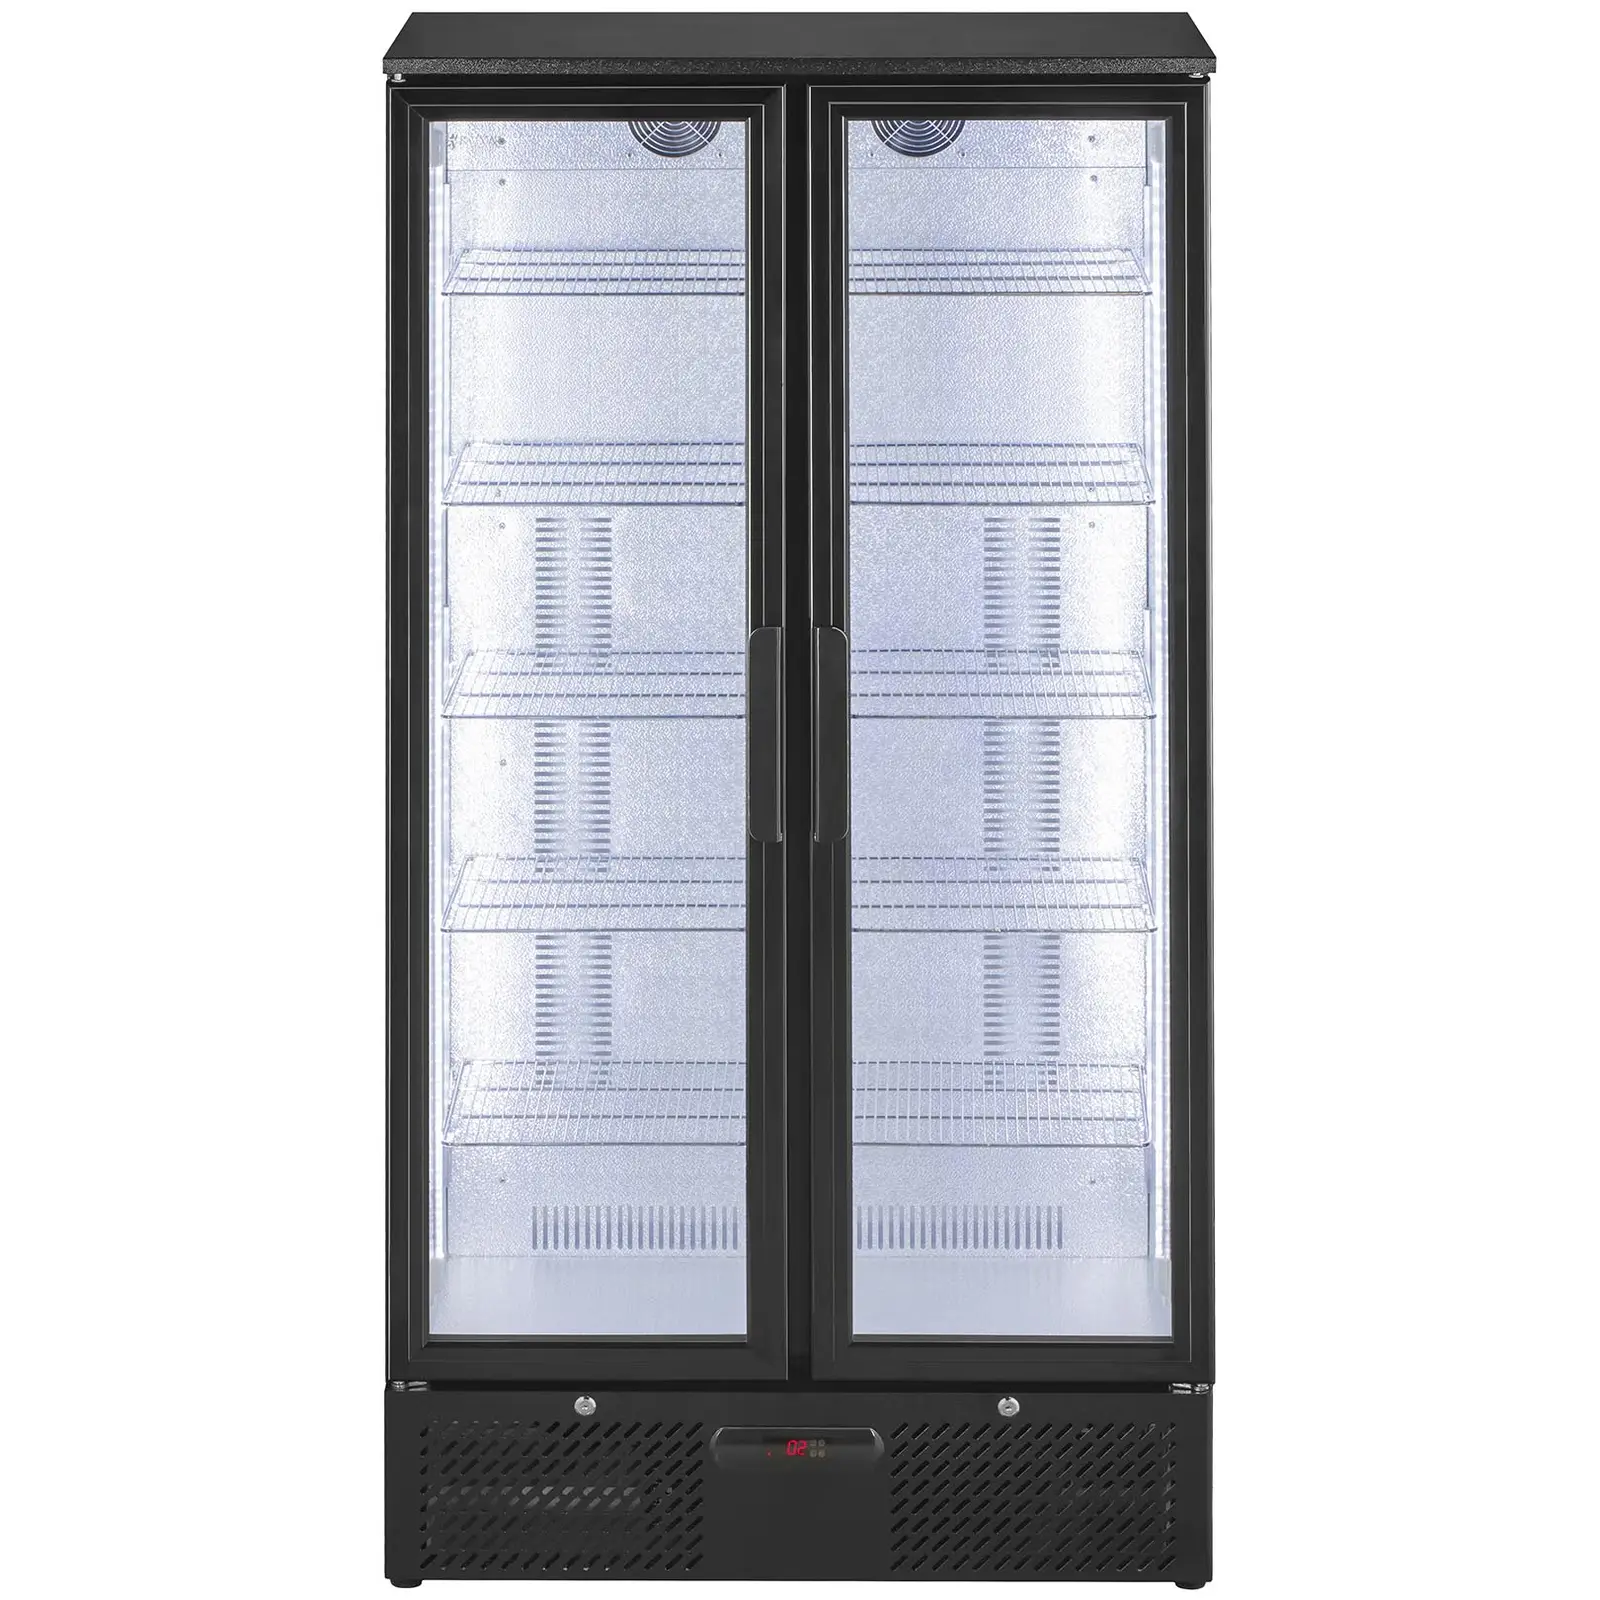 Chladnička - 458 litrů - matně černý design